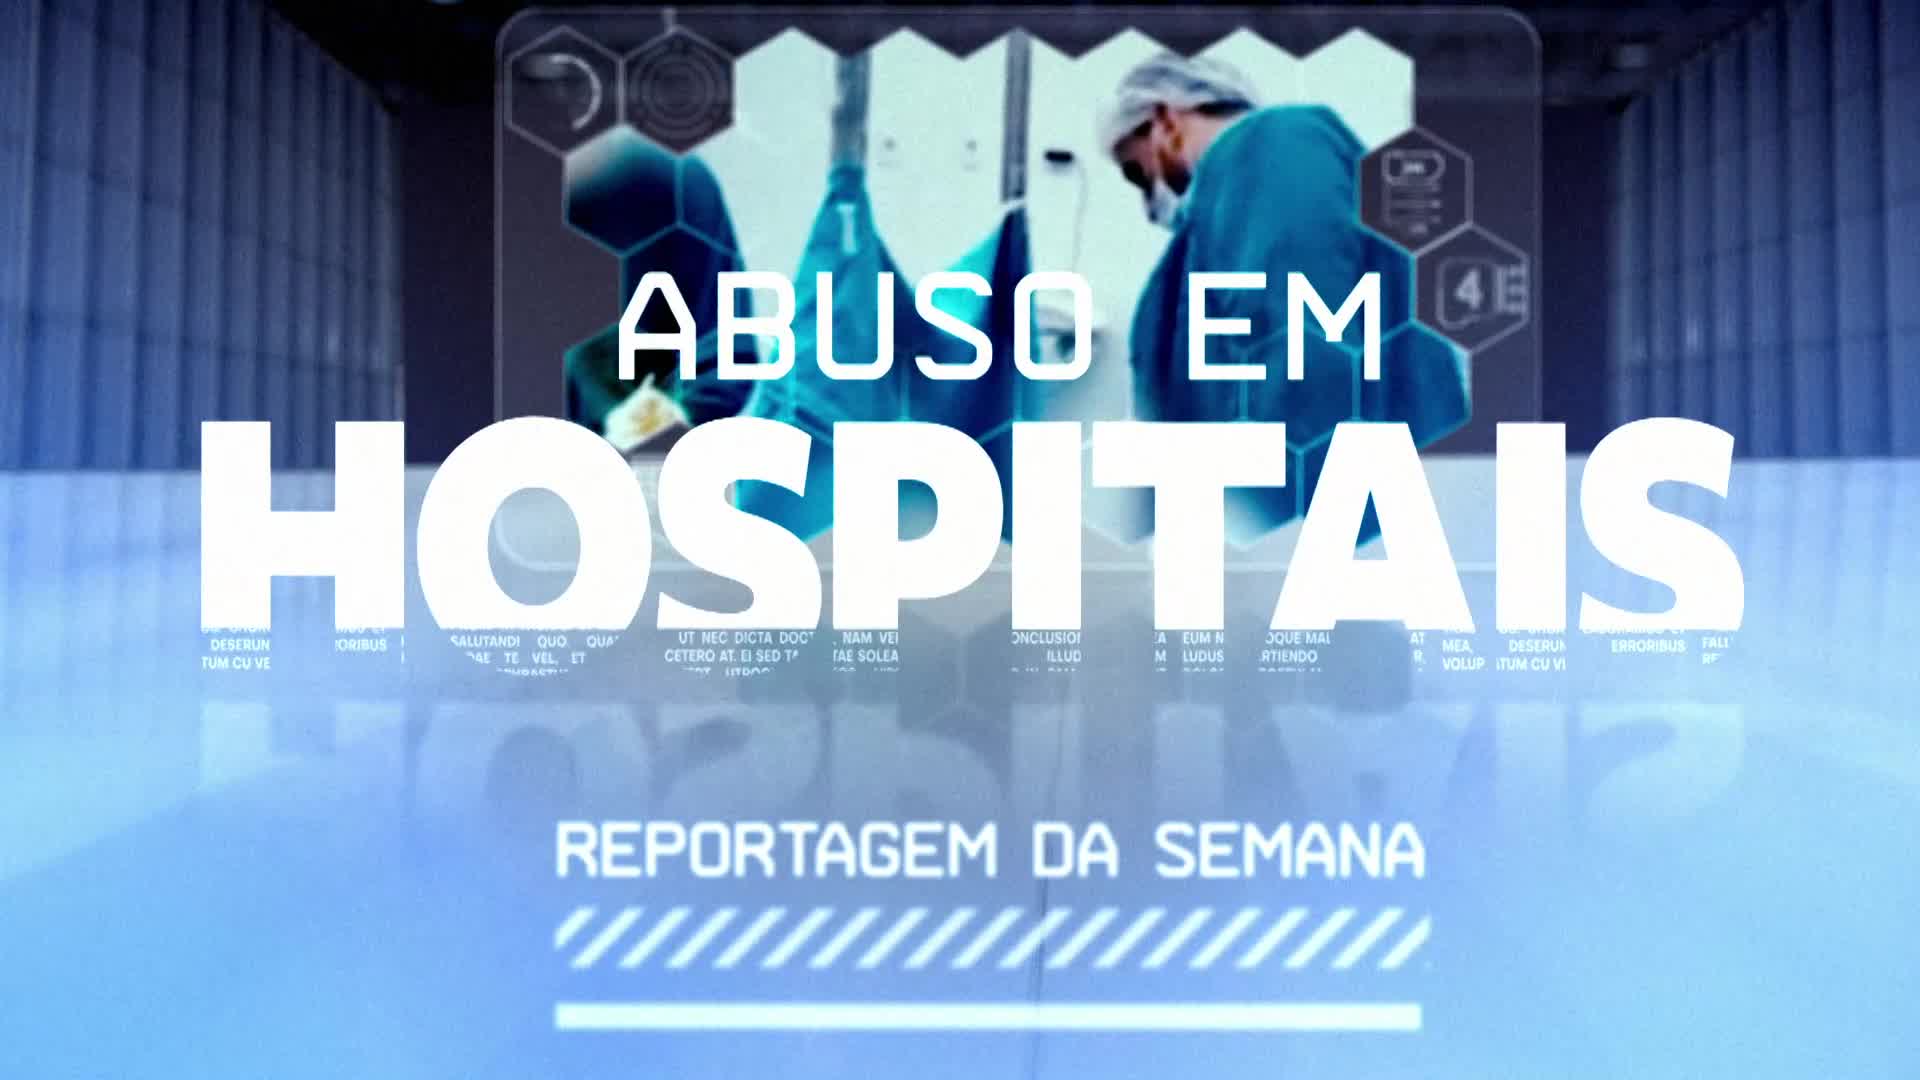 Abuso em hospitais - E9 (promo)